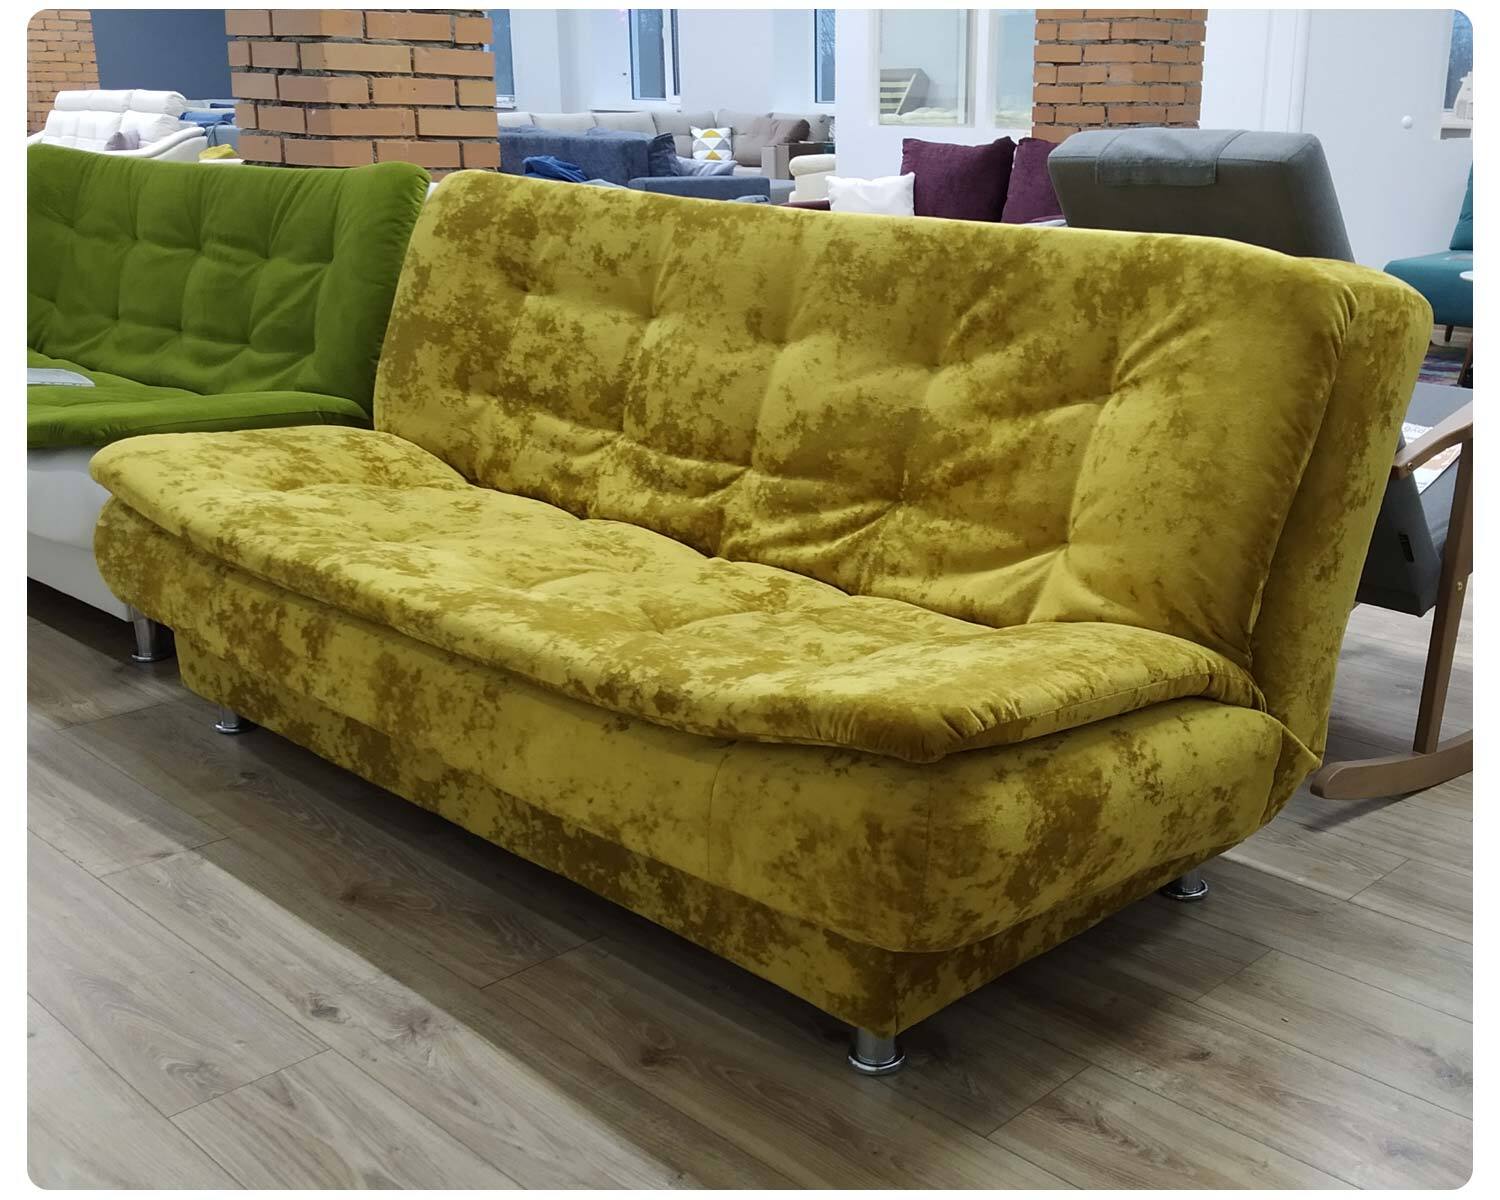 «Бабушкин вариант»: воскресить старый диван или купить новый?